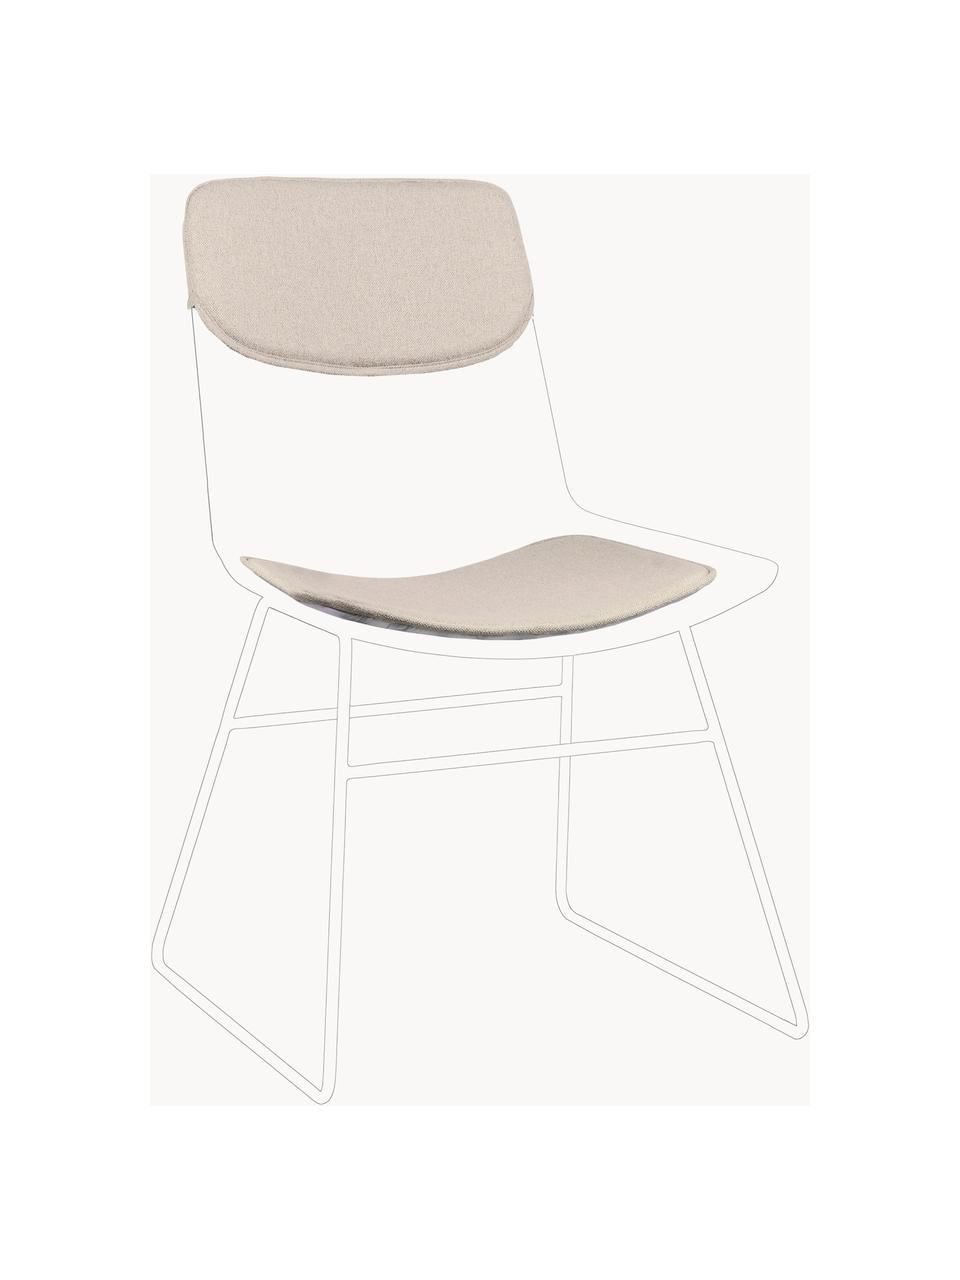 Sitzauflagen für Metall-Stuhl Wire, 2er-Set, Bezug: 60% Leinen, 30% Baumwolle, Hellbeige, Set mit verschiedenen Größen